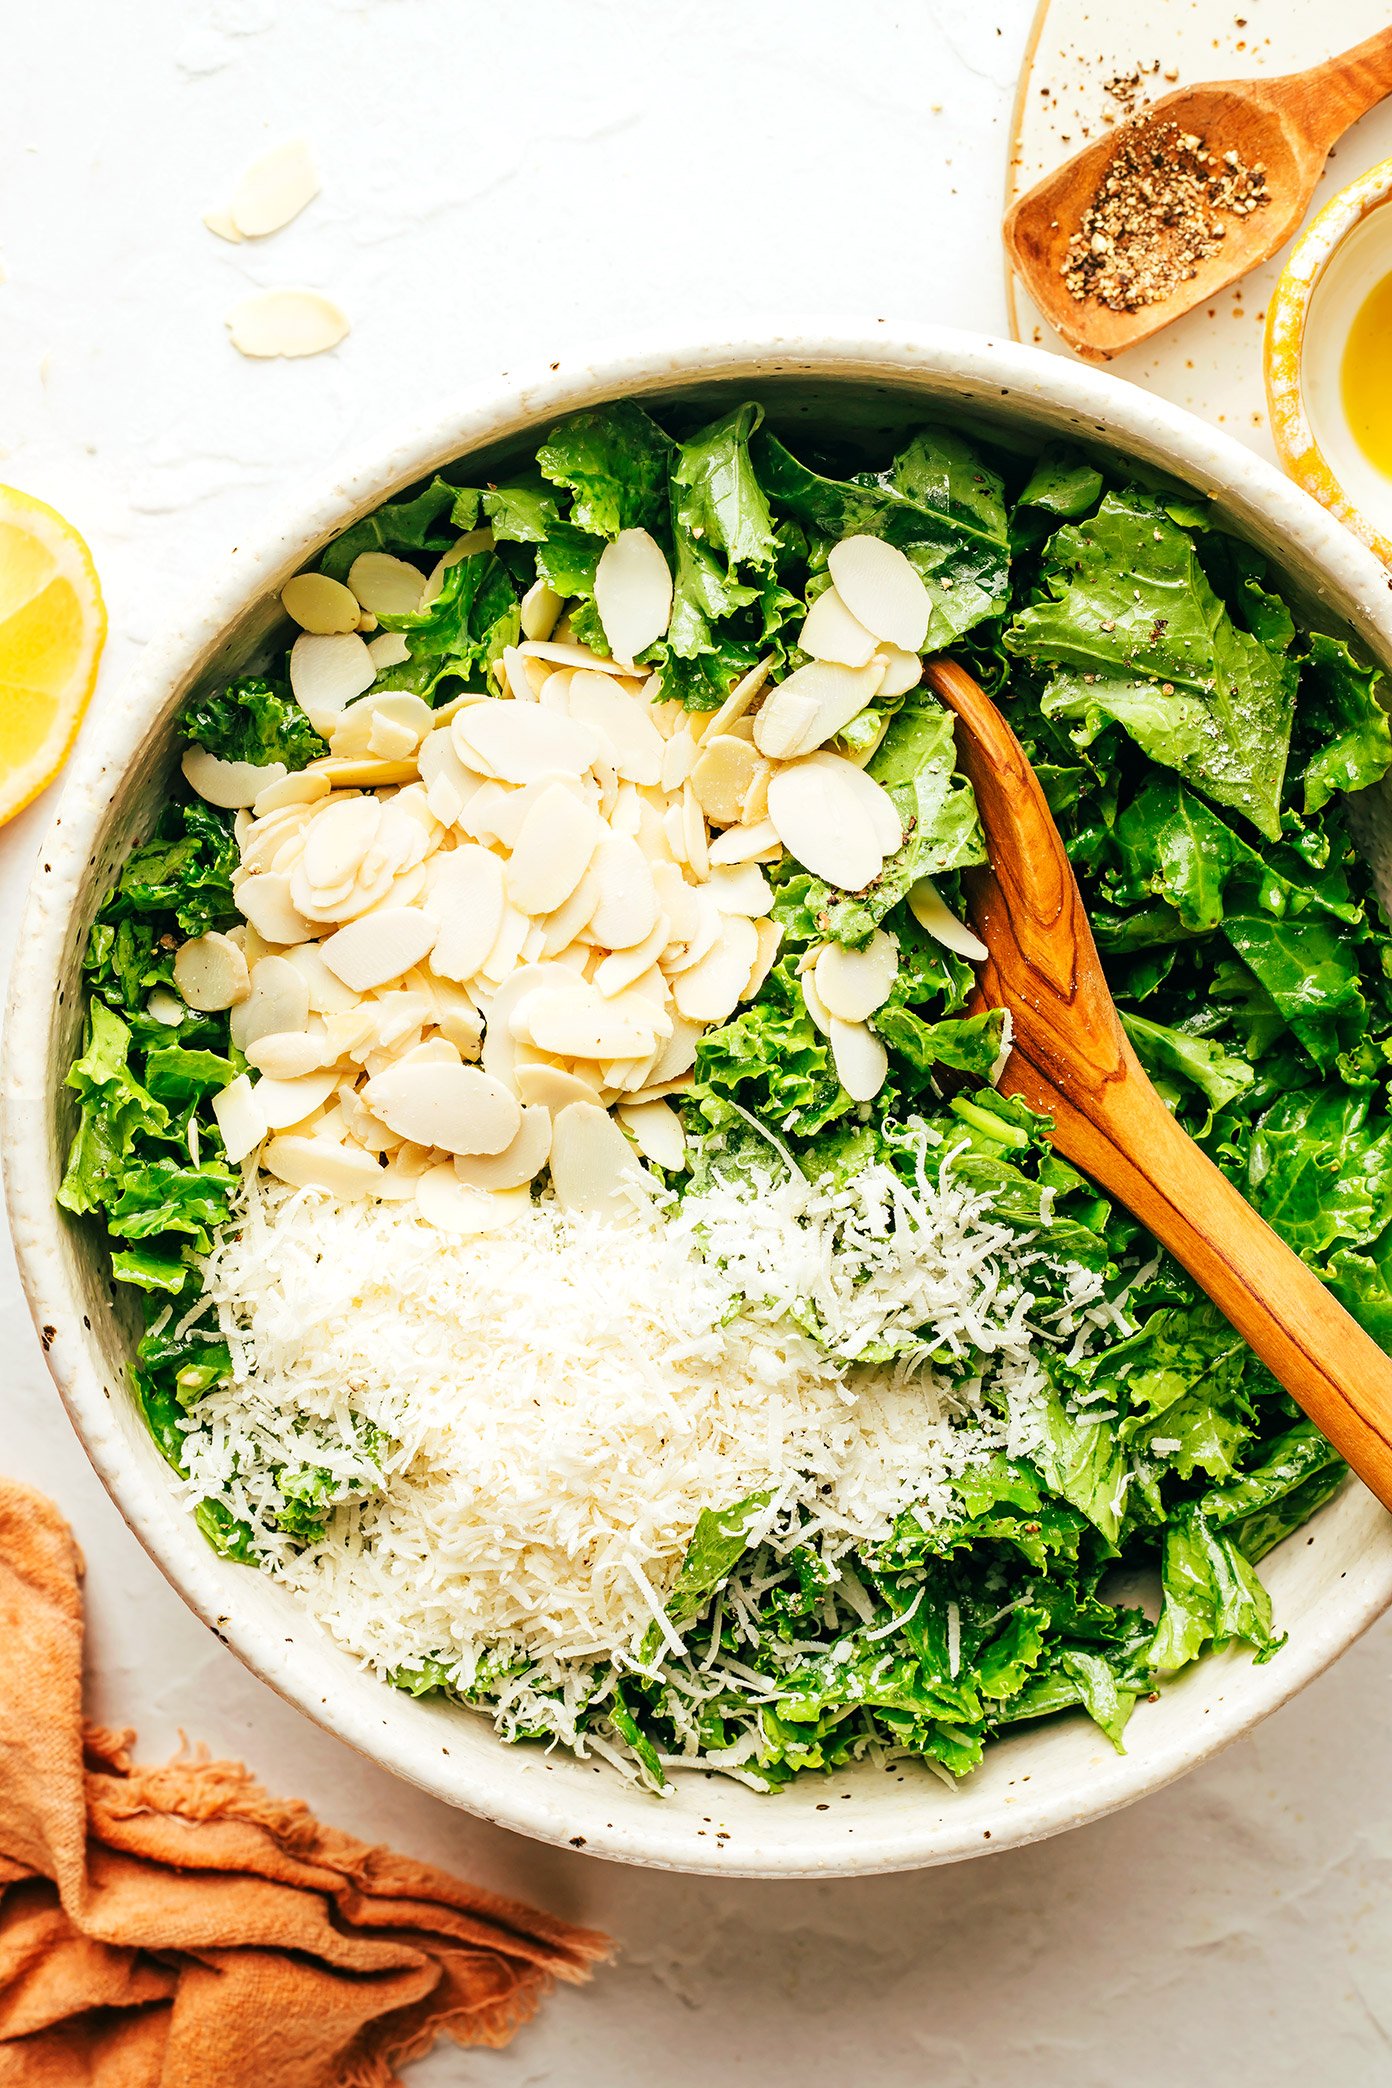 Kale Salad Ingredients in Bowl